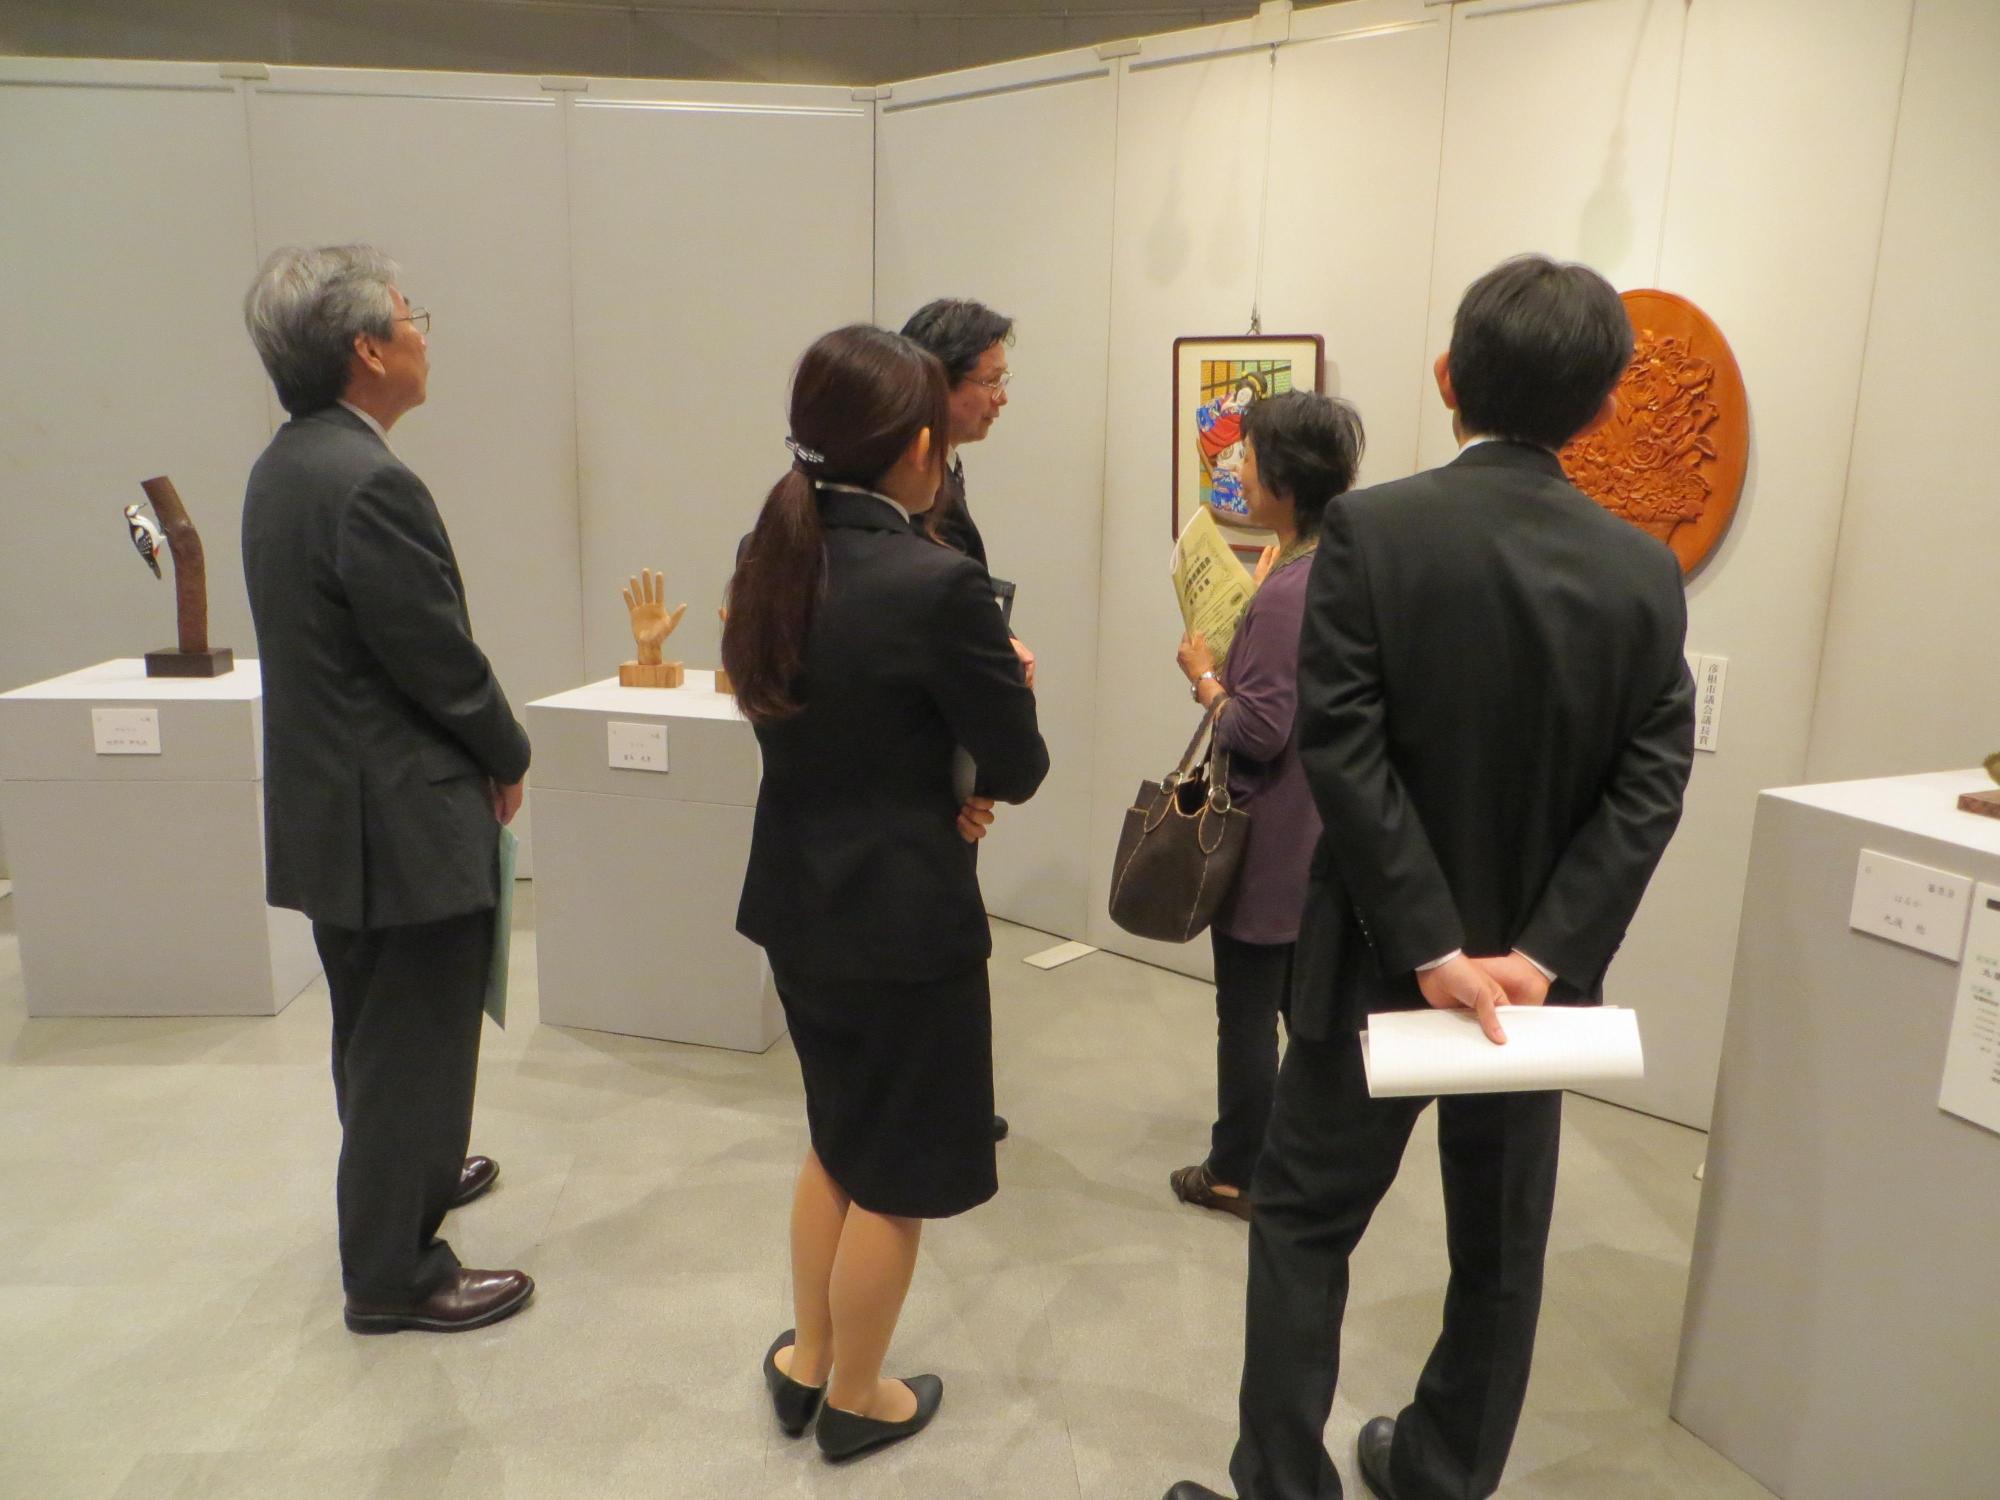 彫刻部門の展示品と展示品を見学している来場者の写真